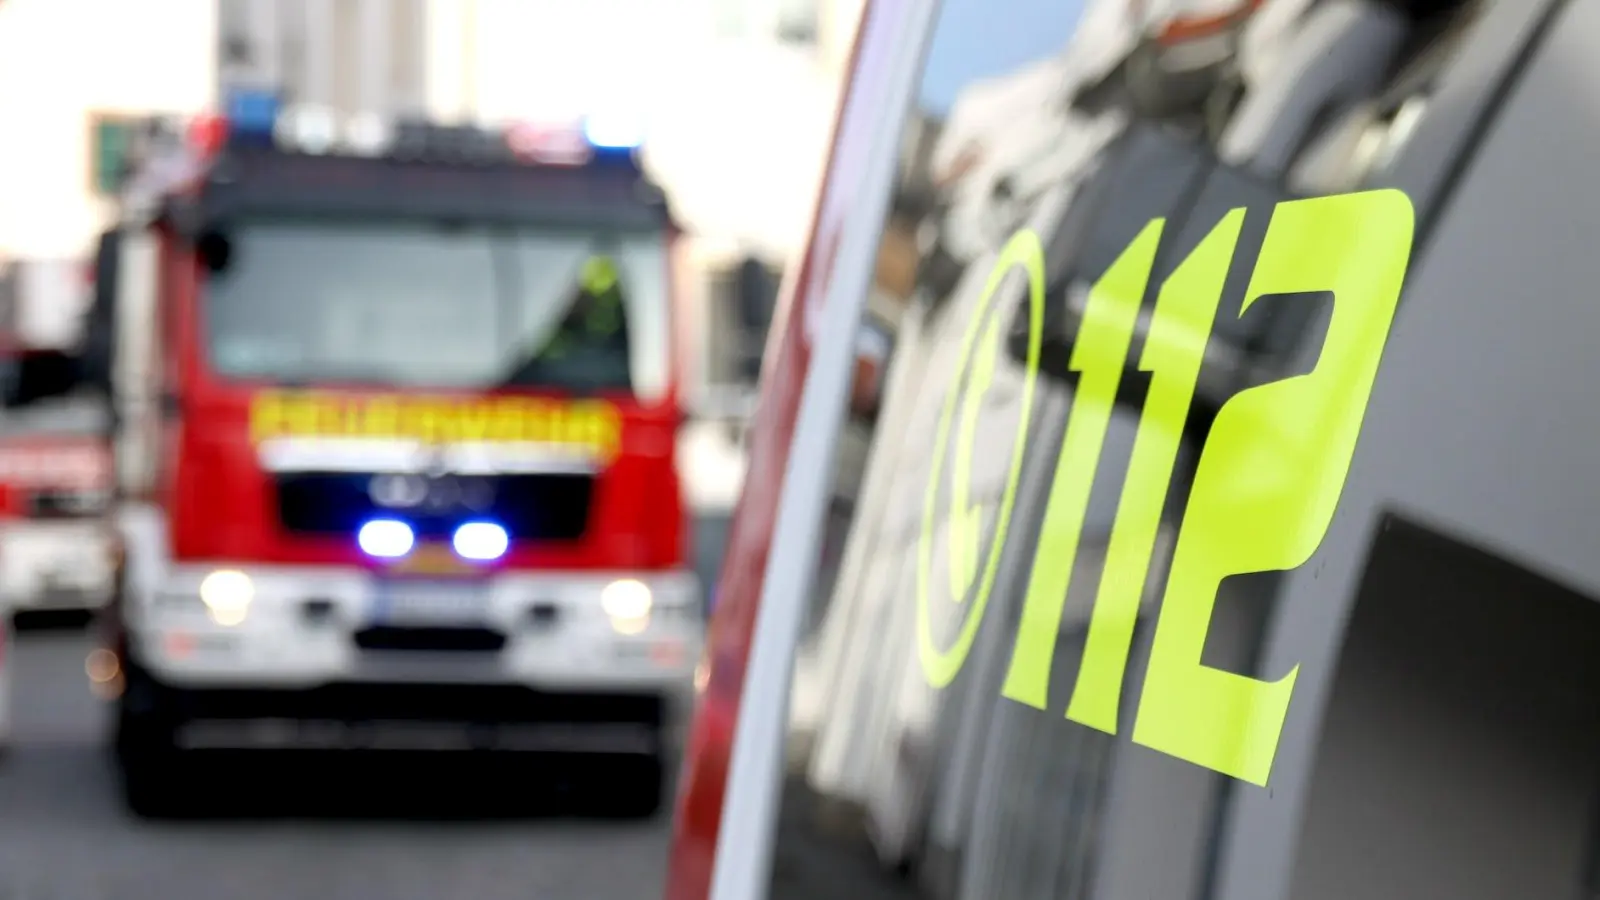 Brand in Einfamilienhaus: Mann tot aufgefunden (Foto: nordsachsen24.de)